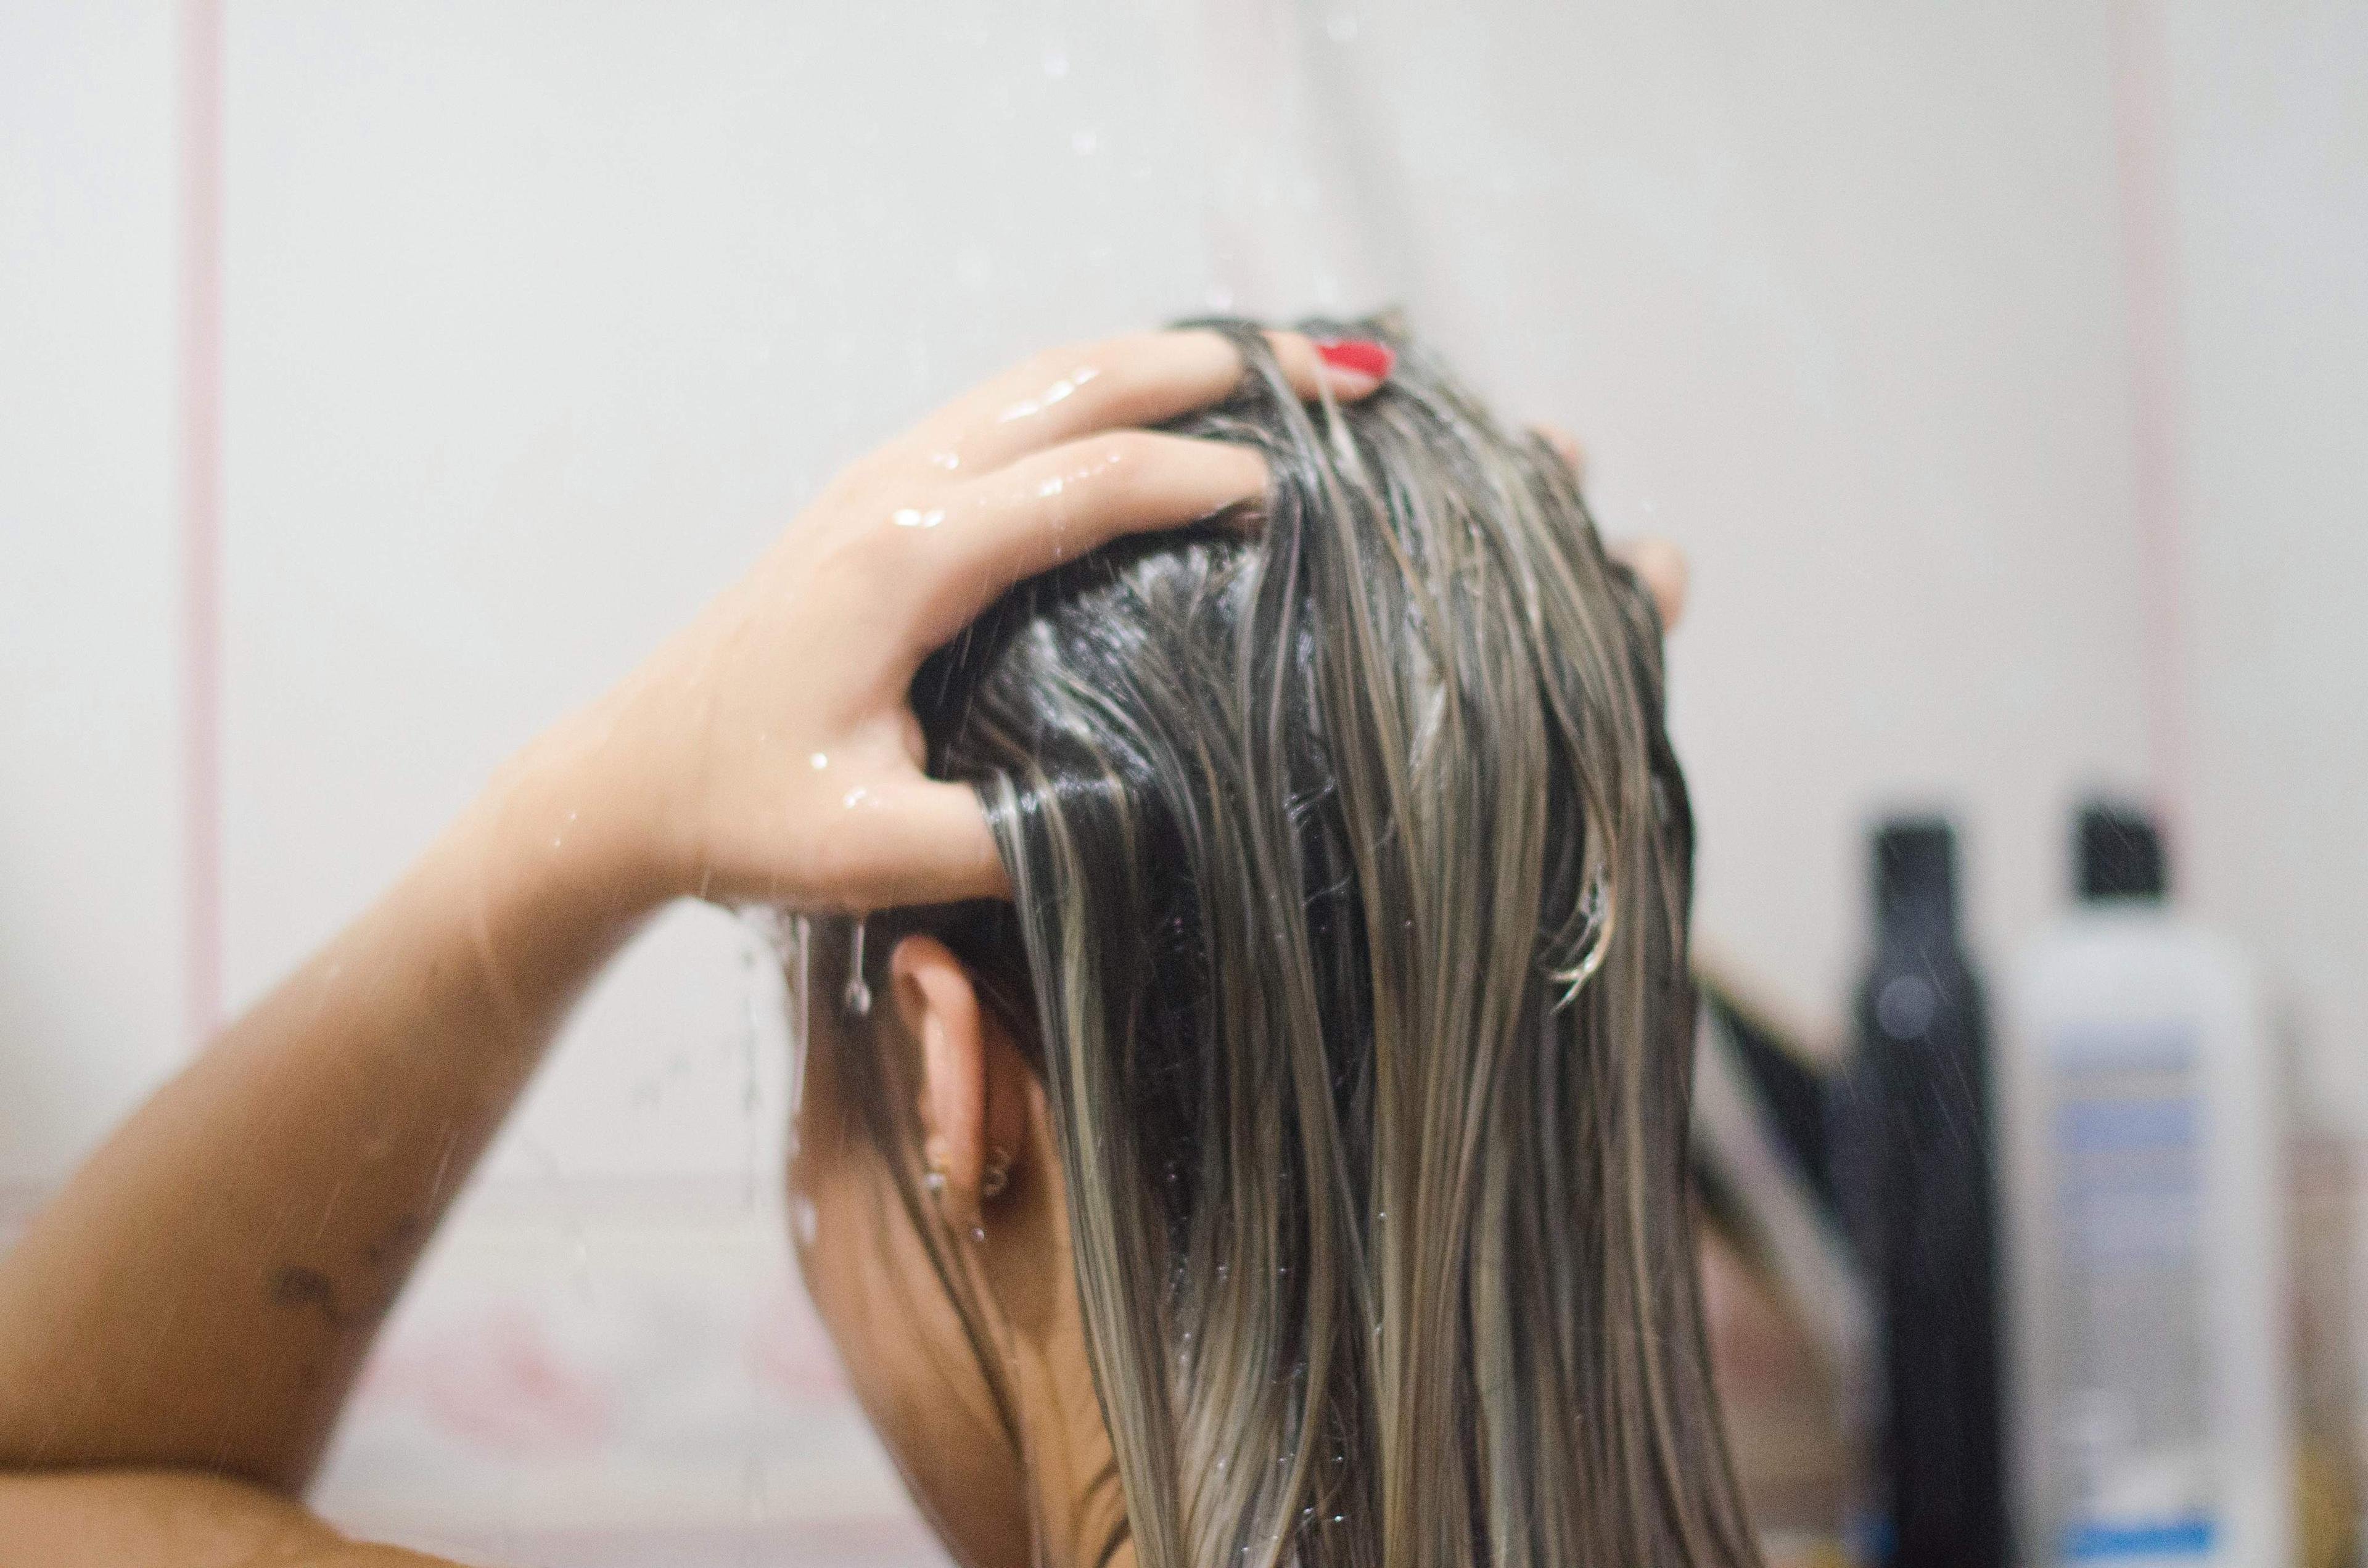 Šamponiranje kose dva puta je korisno jer omogućuje pravilno čišćenje - Avaz